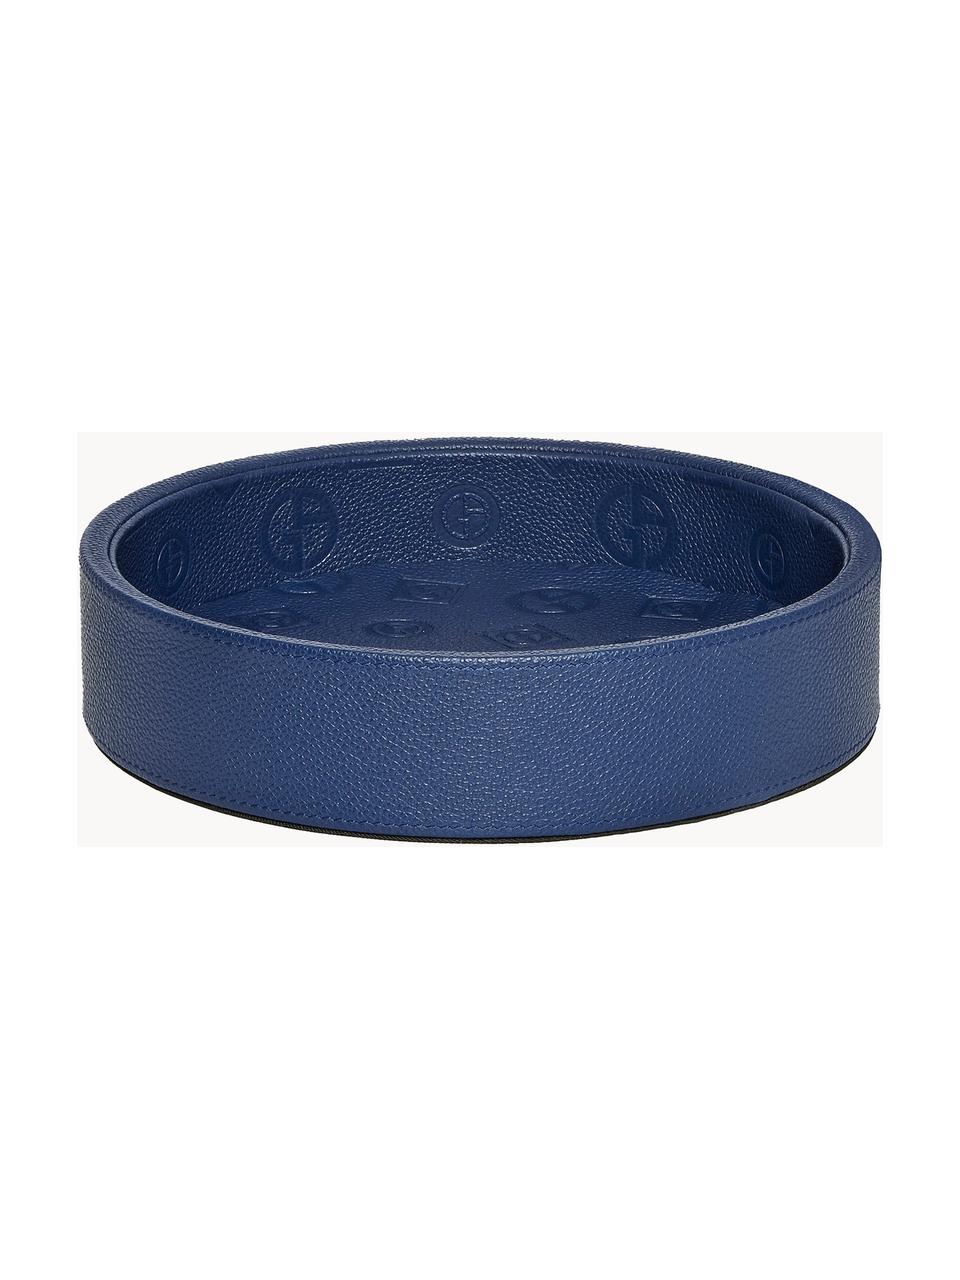 Bandeja decorativa de cuero Sirio, Piel, estampado, Azul oscuro, Ø 22 cm